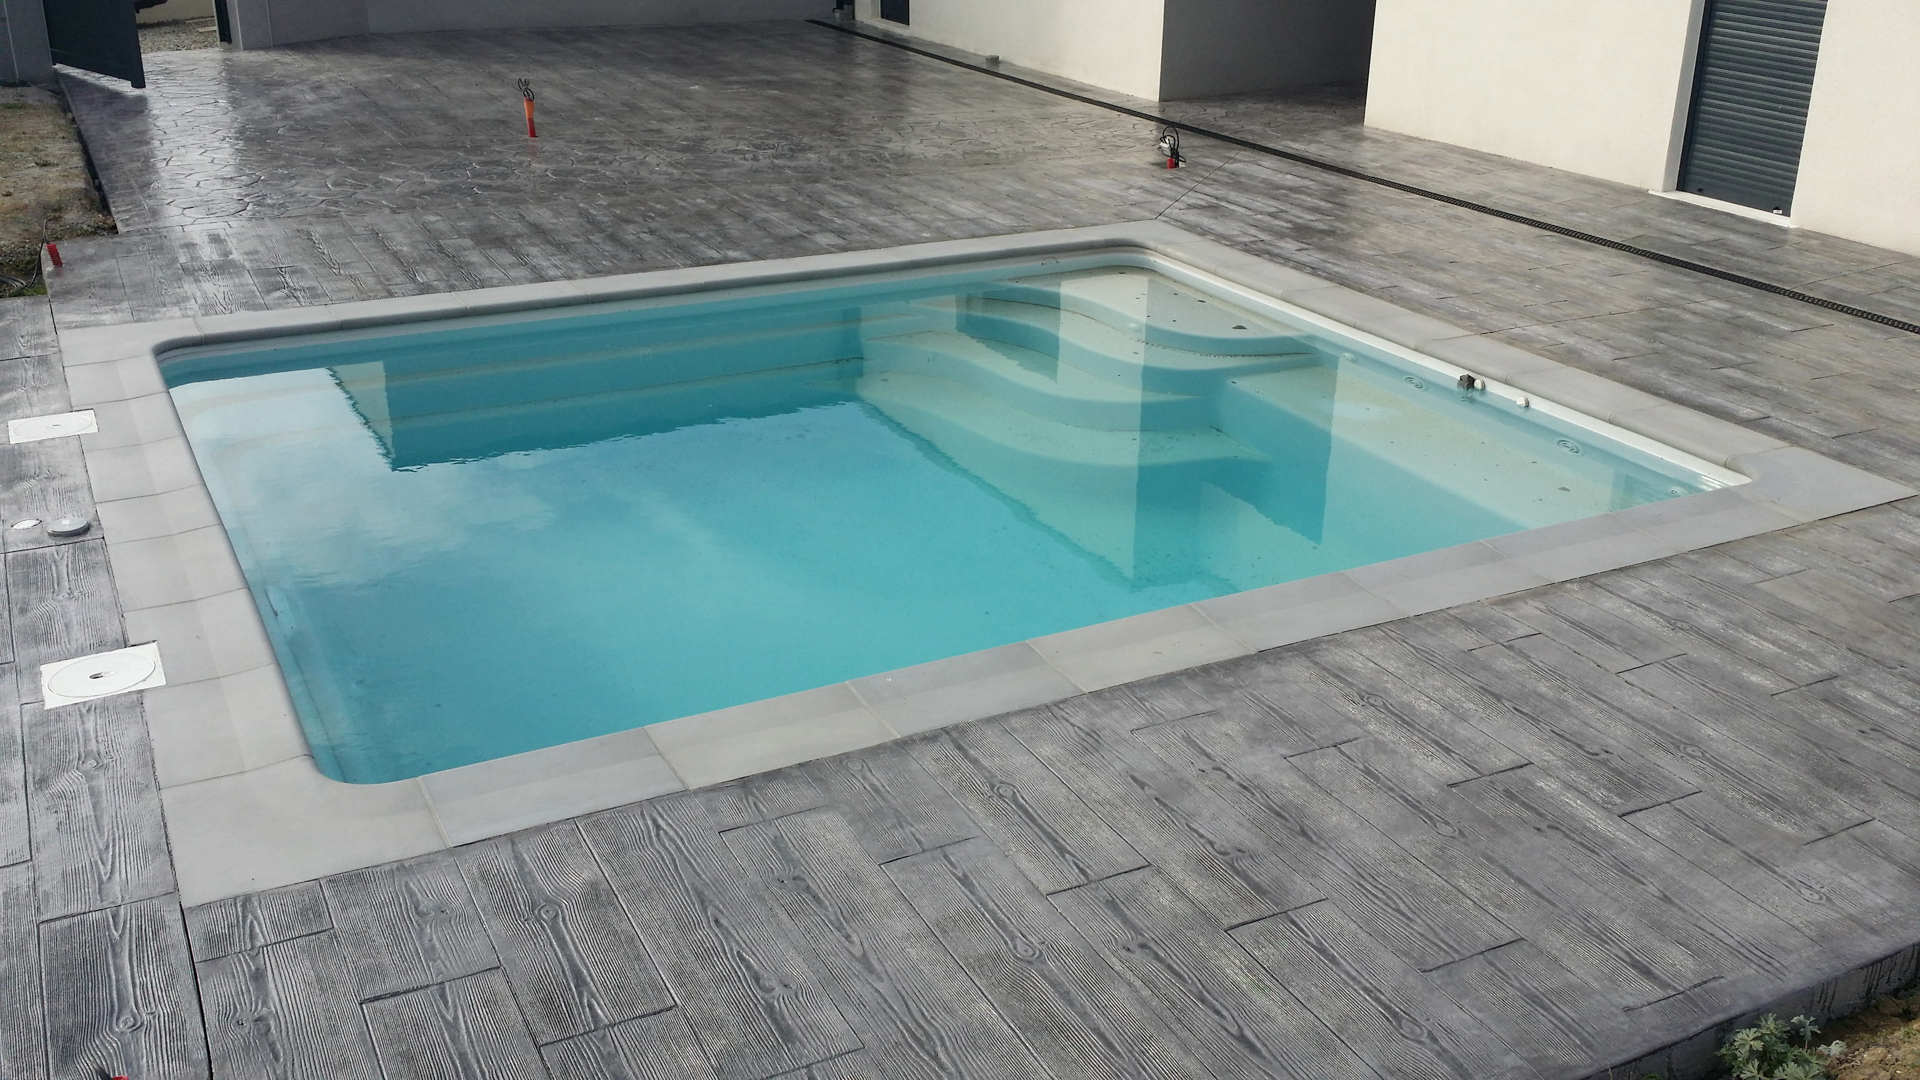  alberca piscina con hormigón impreso imitación madera